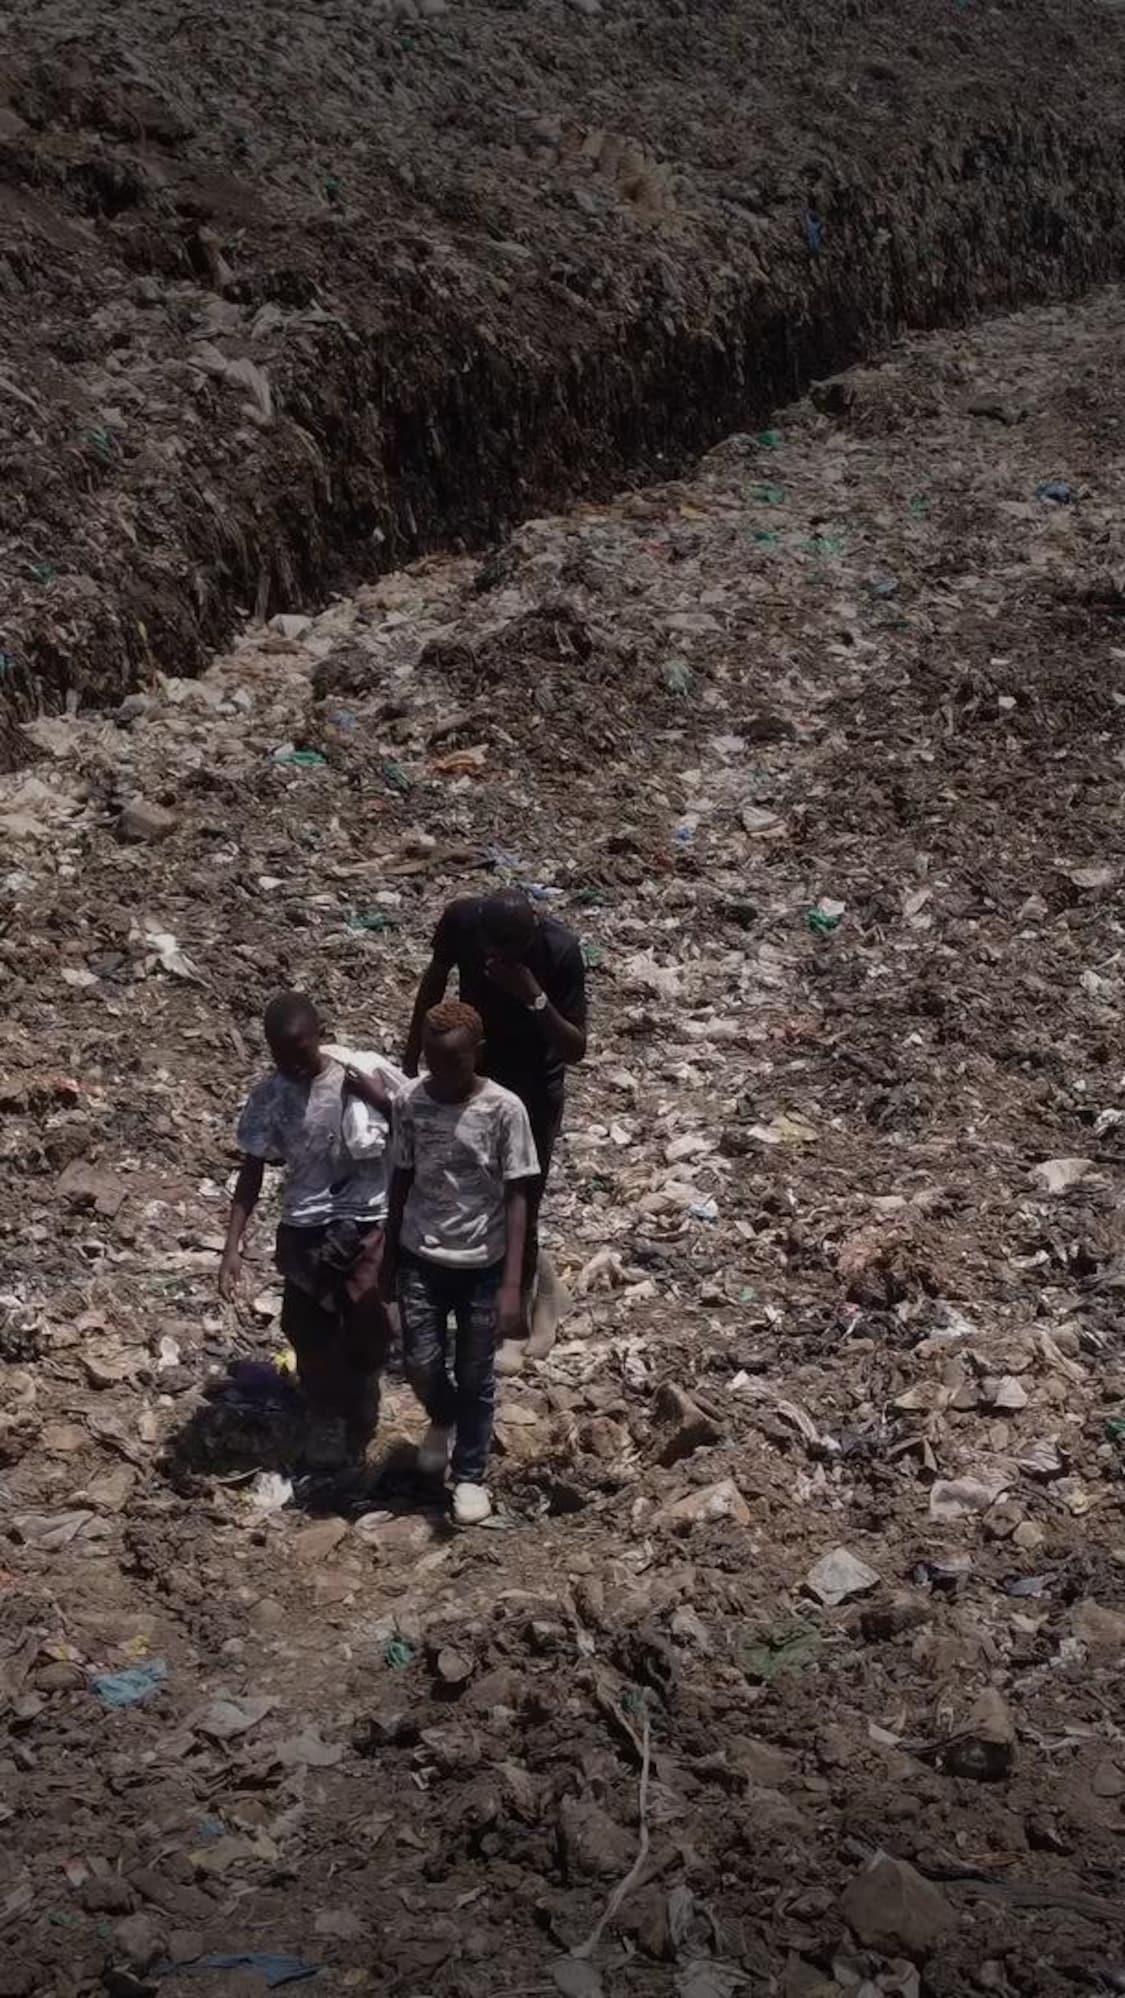 Des enfants devant un sac de déchets.